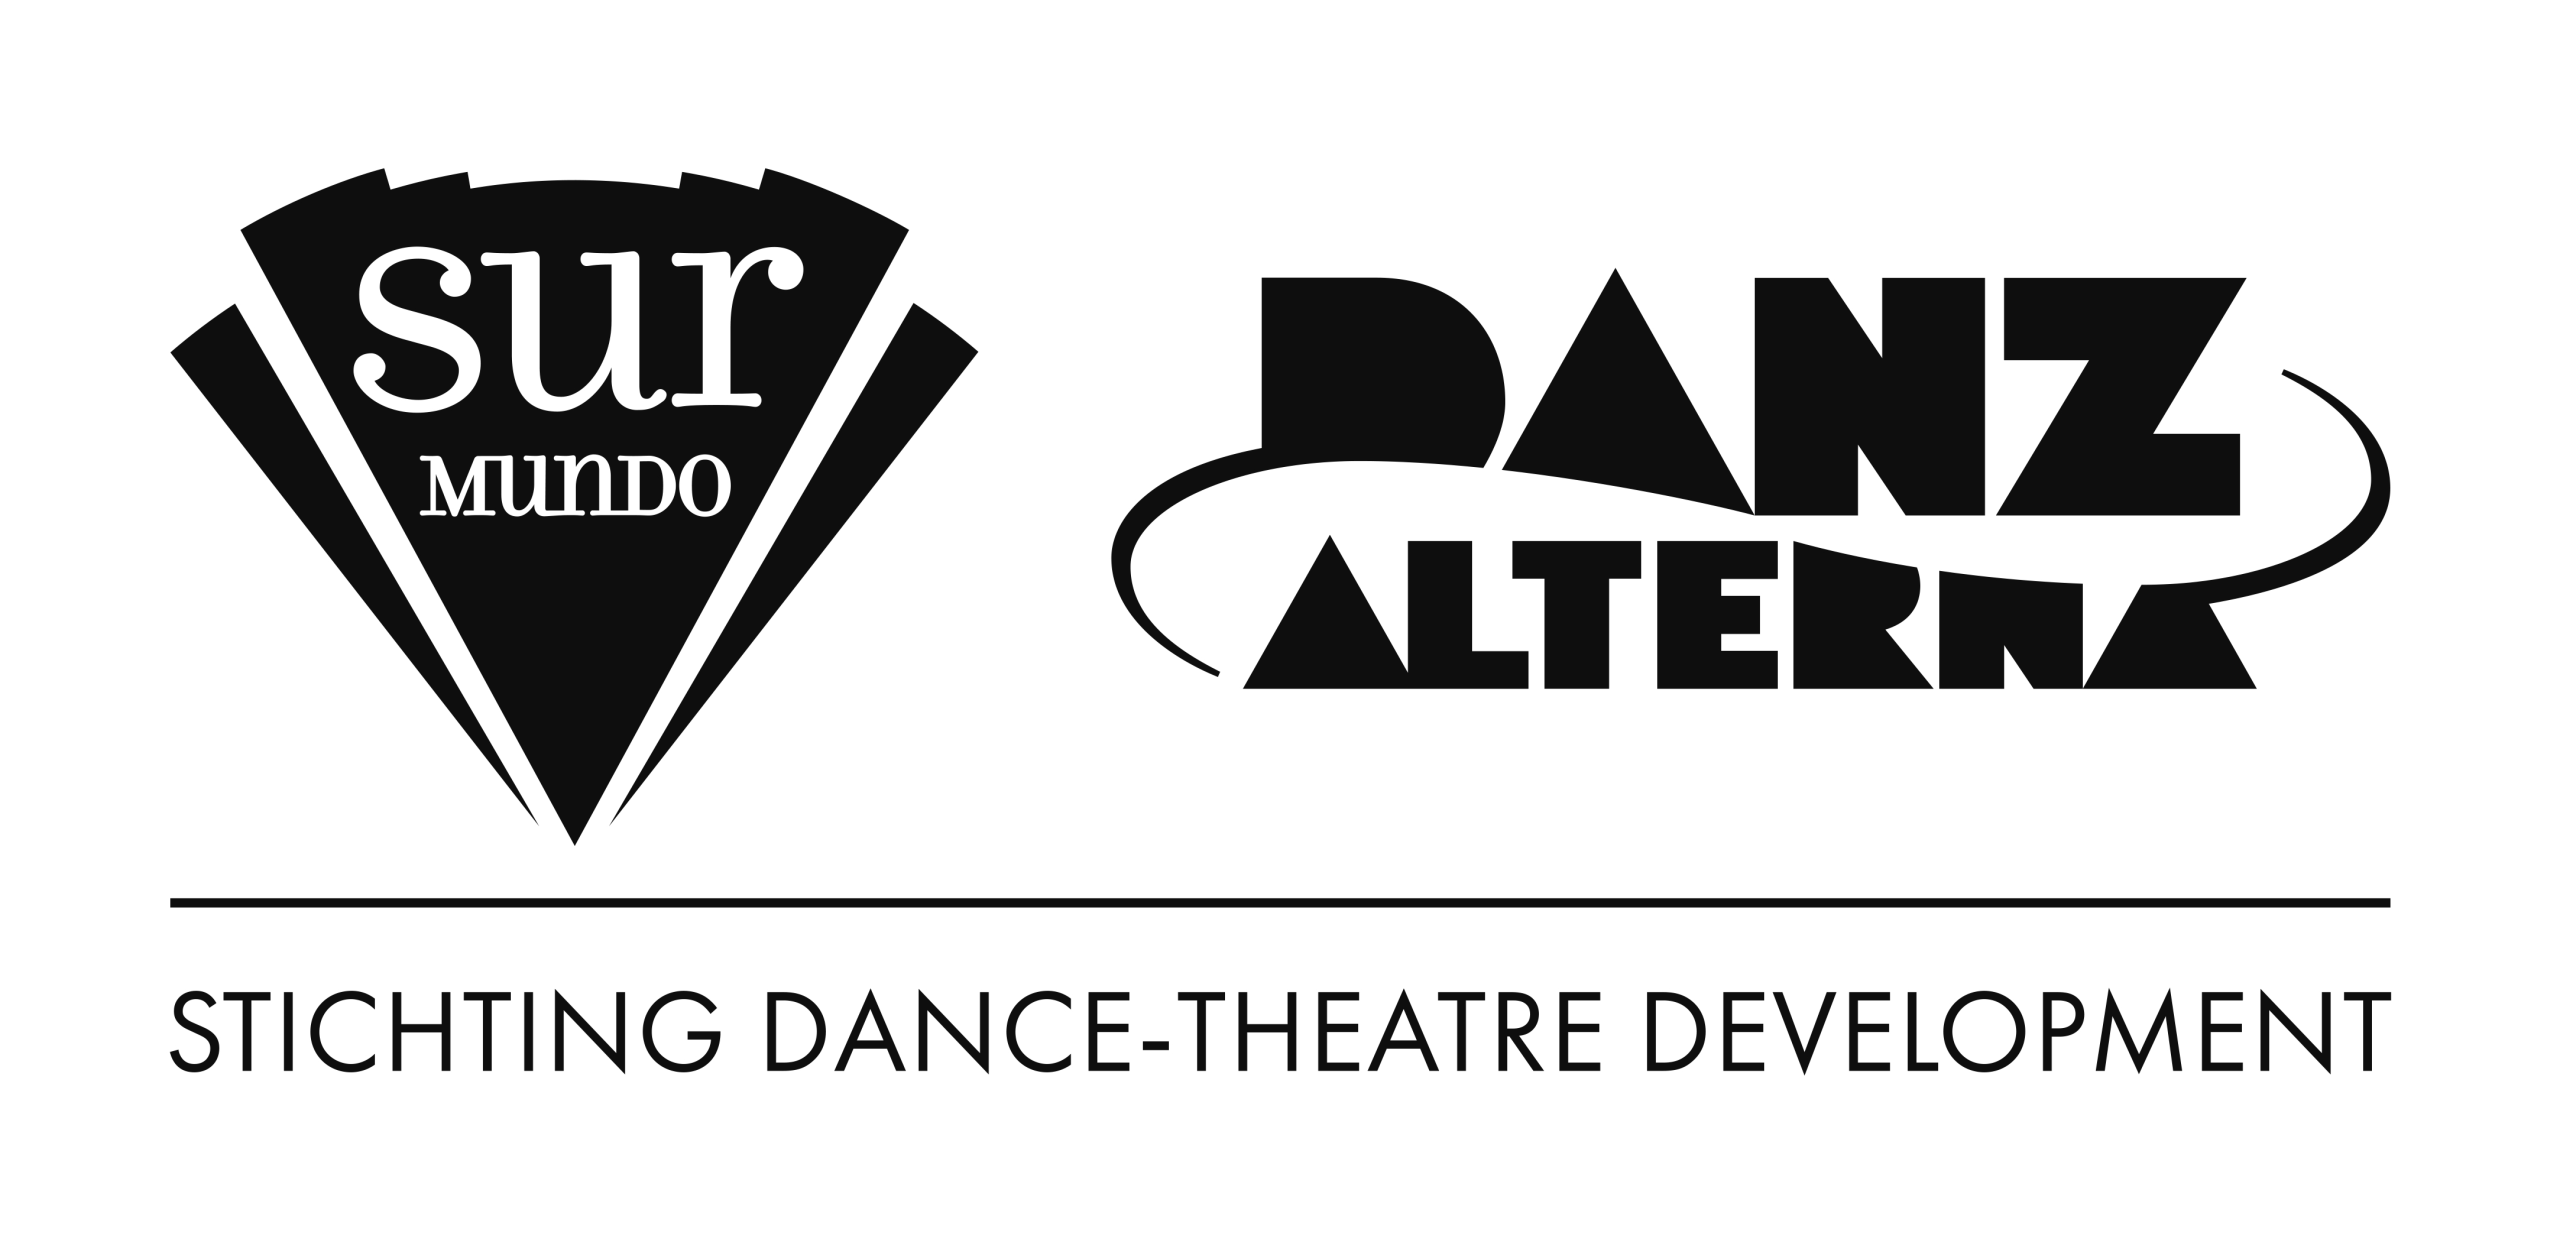 Dance-Theatre Development stg/ Sur Mundo Ensemble